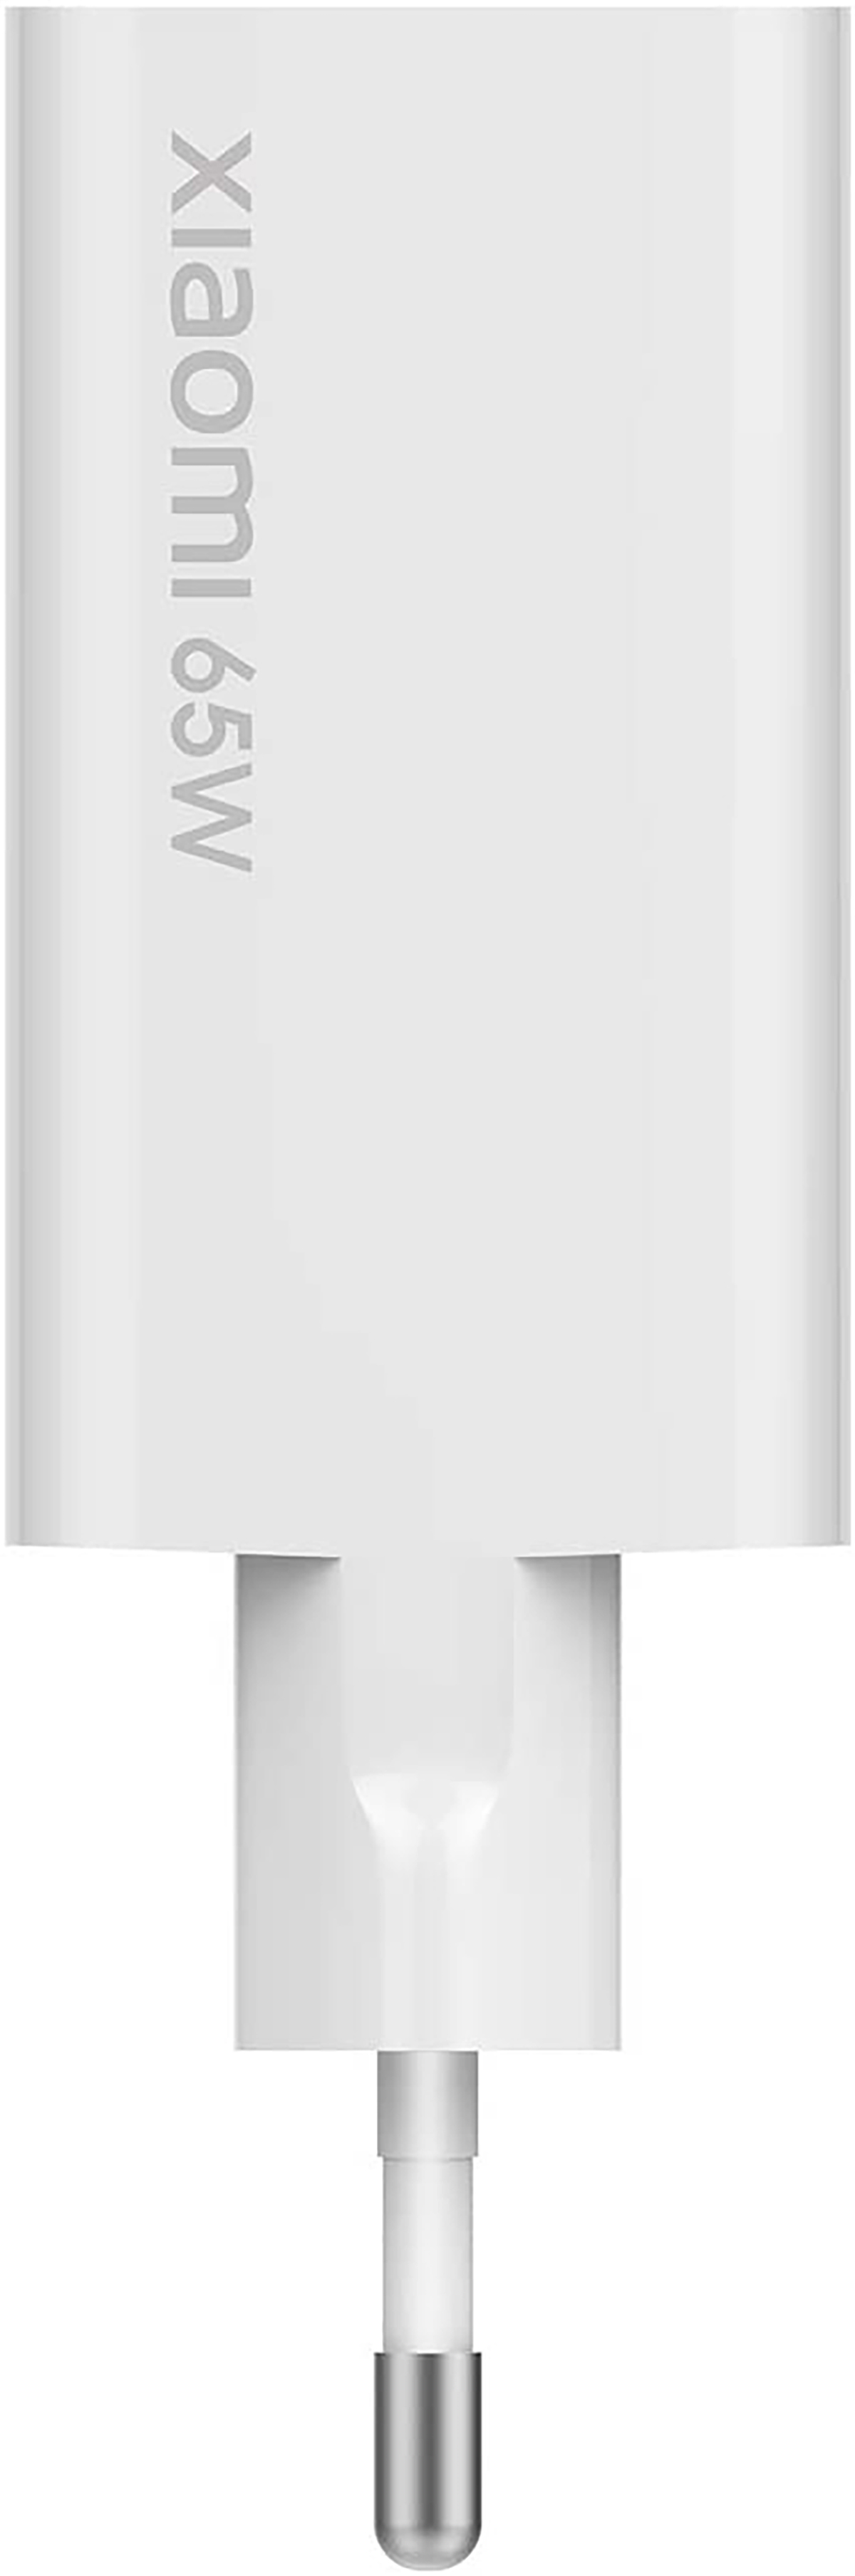 XIAOMI Netzteil, 5A Universal, 100-240 Weiß USB-C Netzteile Volt, Wand-Ladegerät